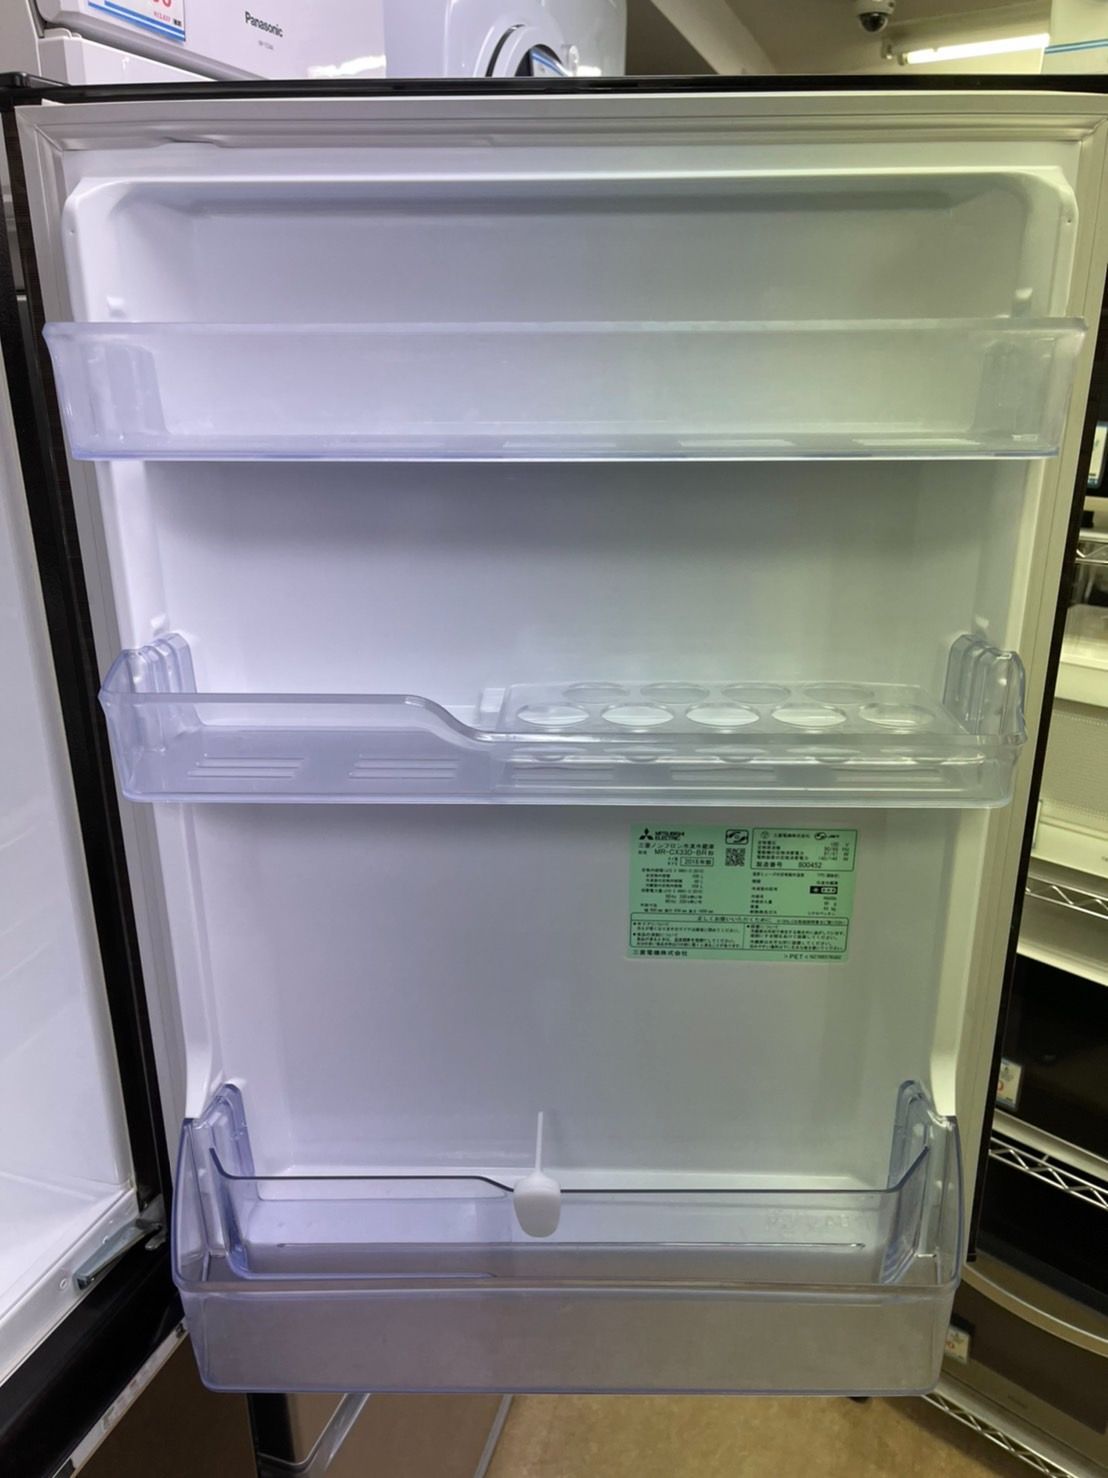 (N.W)MITSUBISHI 冷蔵庫 330L 2018年製　MR-CX33D